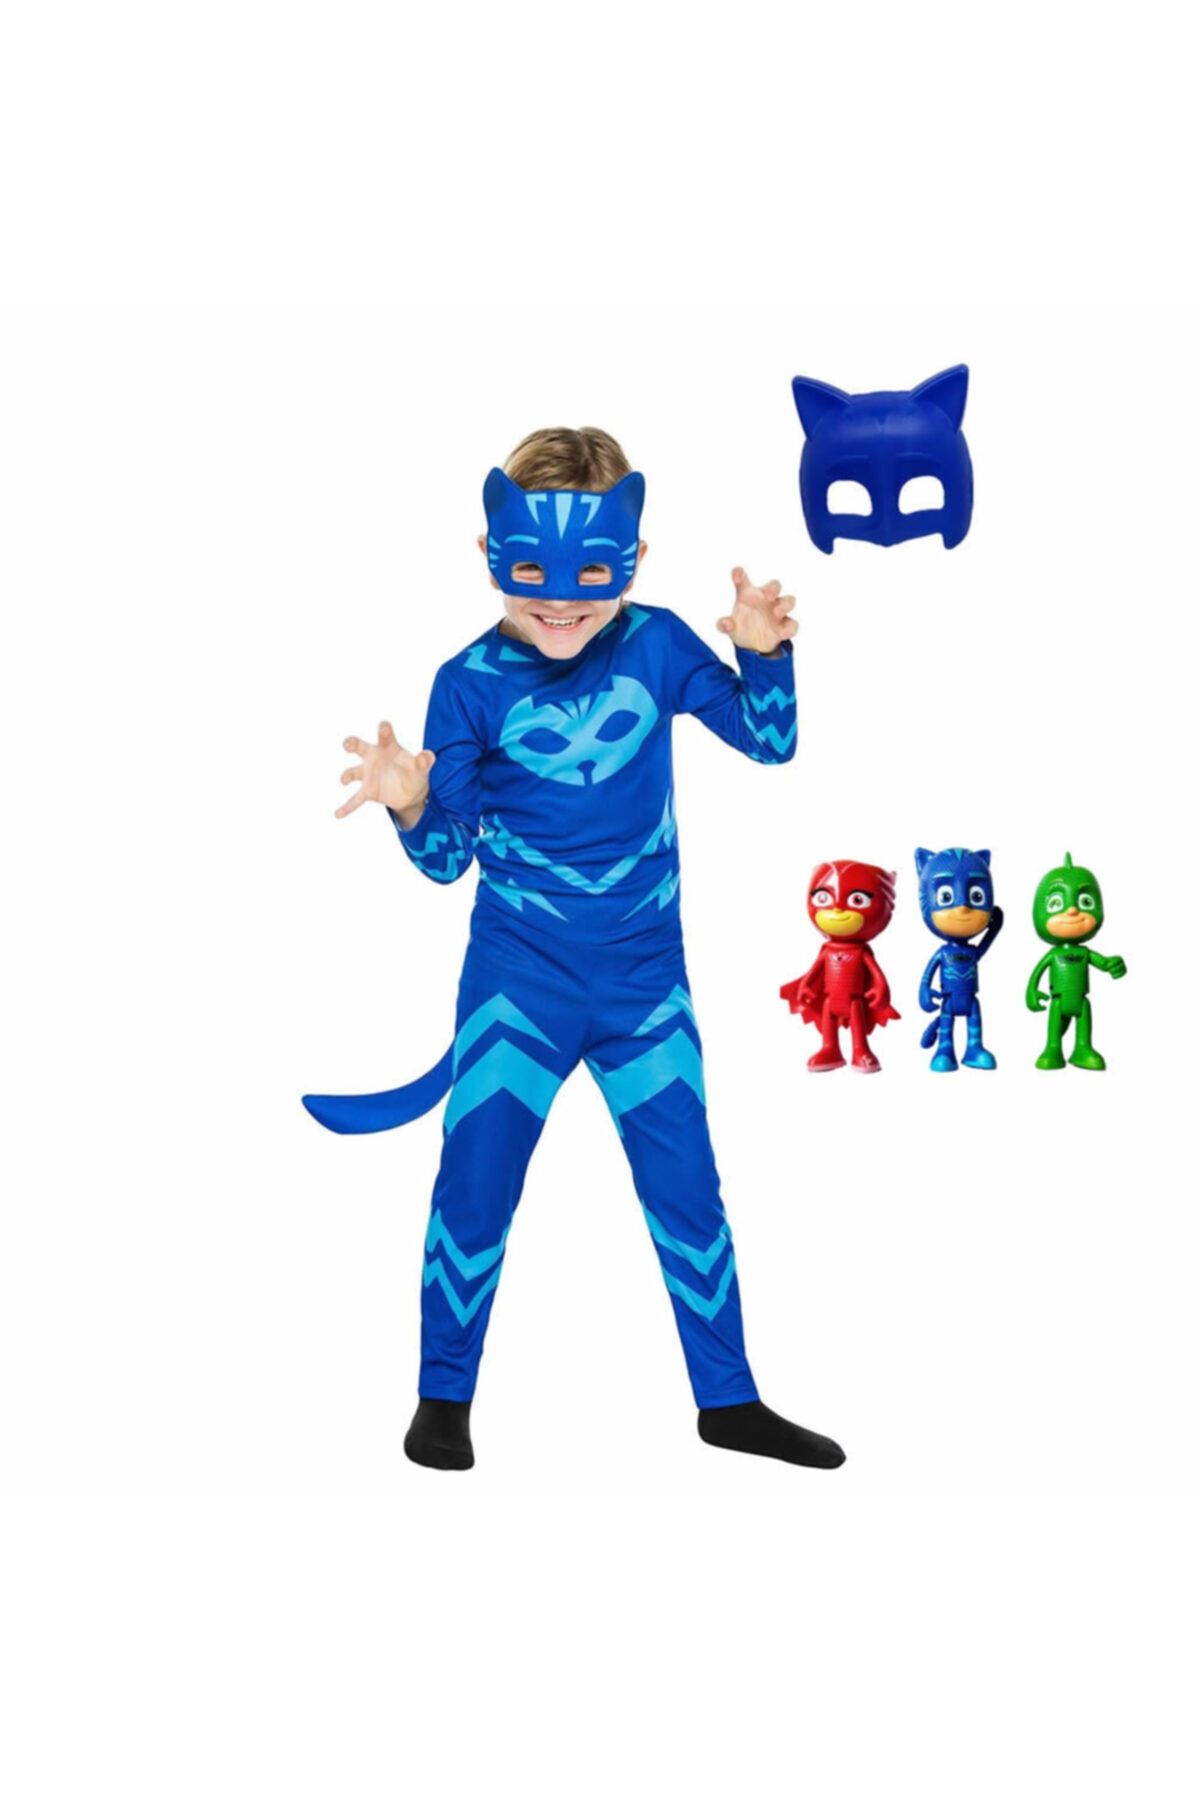 SEDİRLİ Pj Mask Pija Maskeliler 3'lü Mini Figür Oyuncak Ve Catboy Kedi Çocuk 2 Maskeli Kostüm Seti